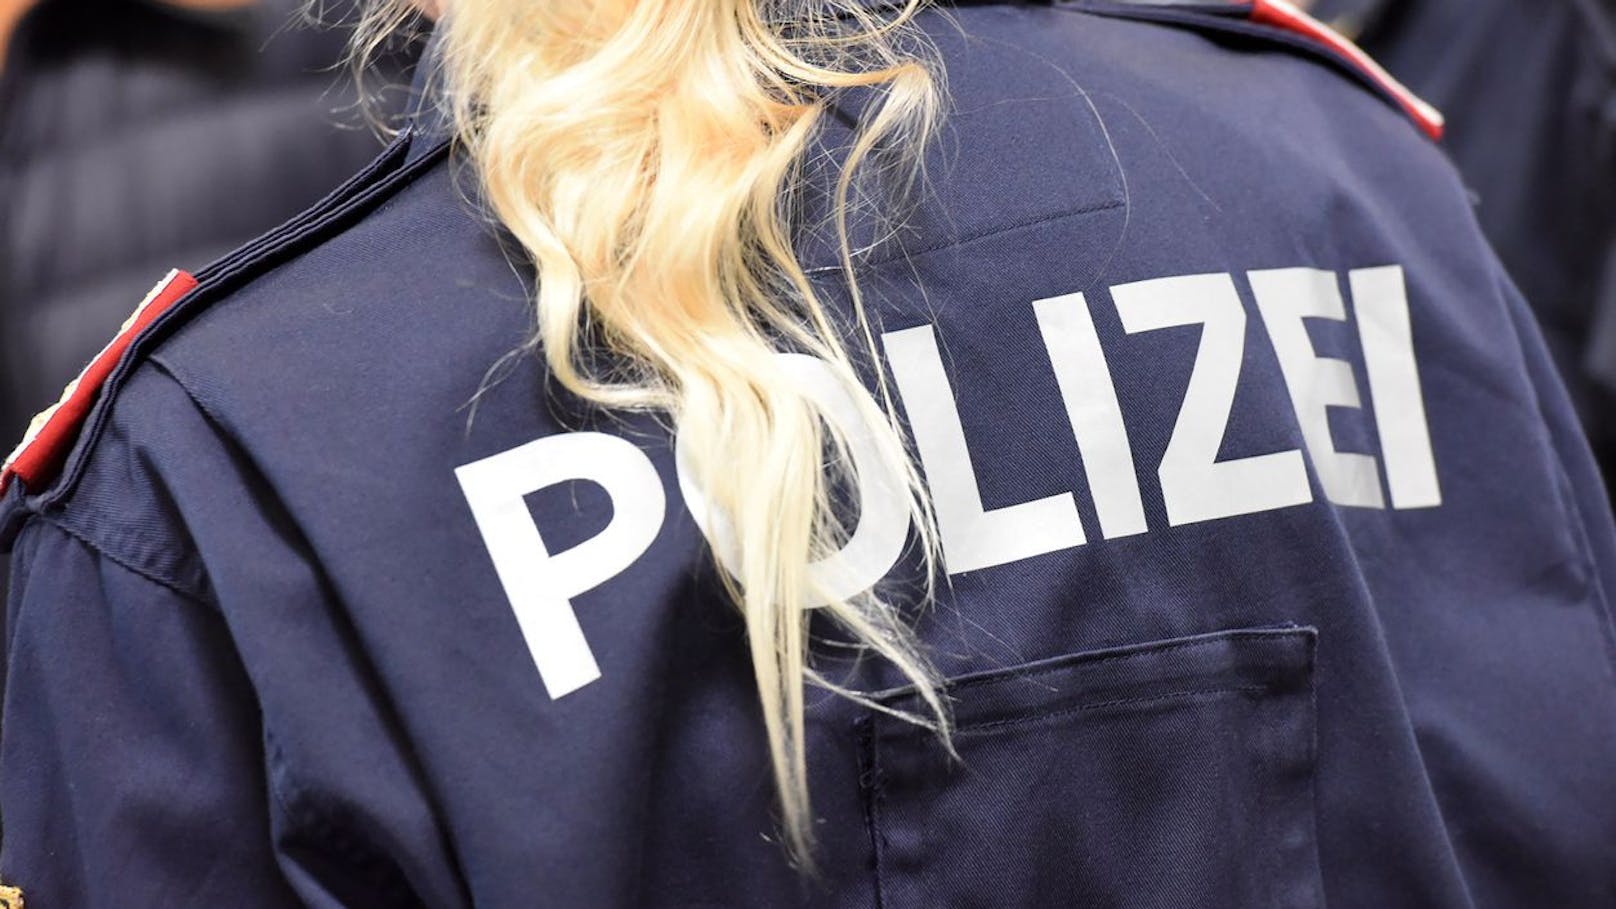 Dreister Betrug in Wien – Polizei sucht nach Opfern